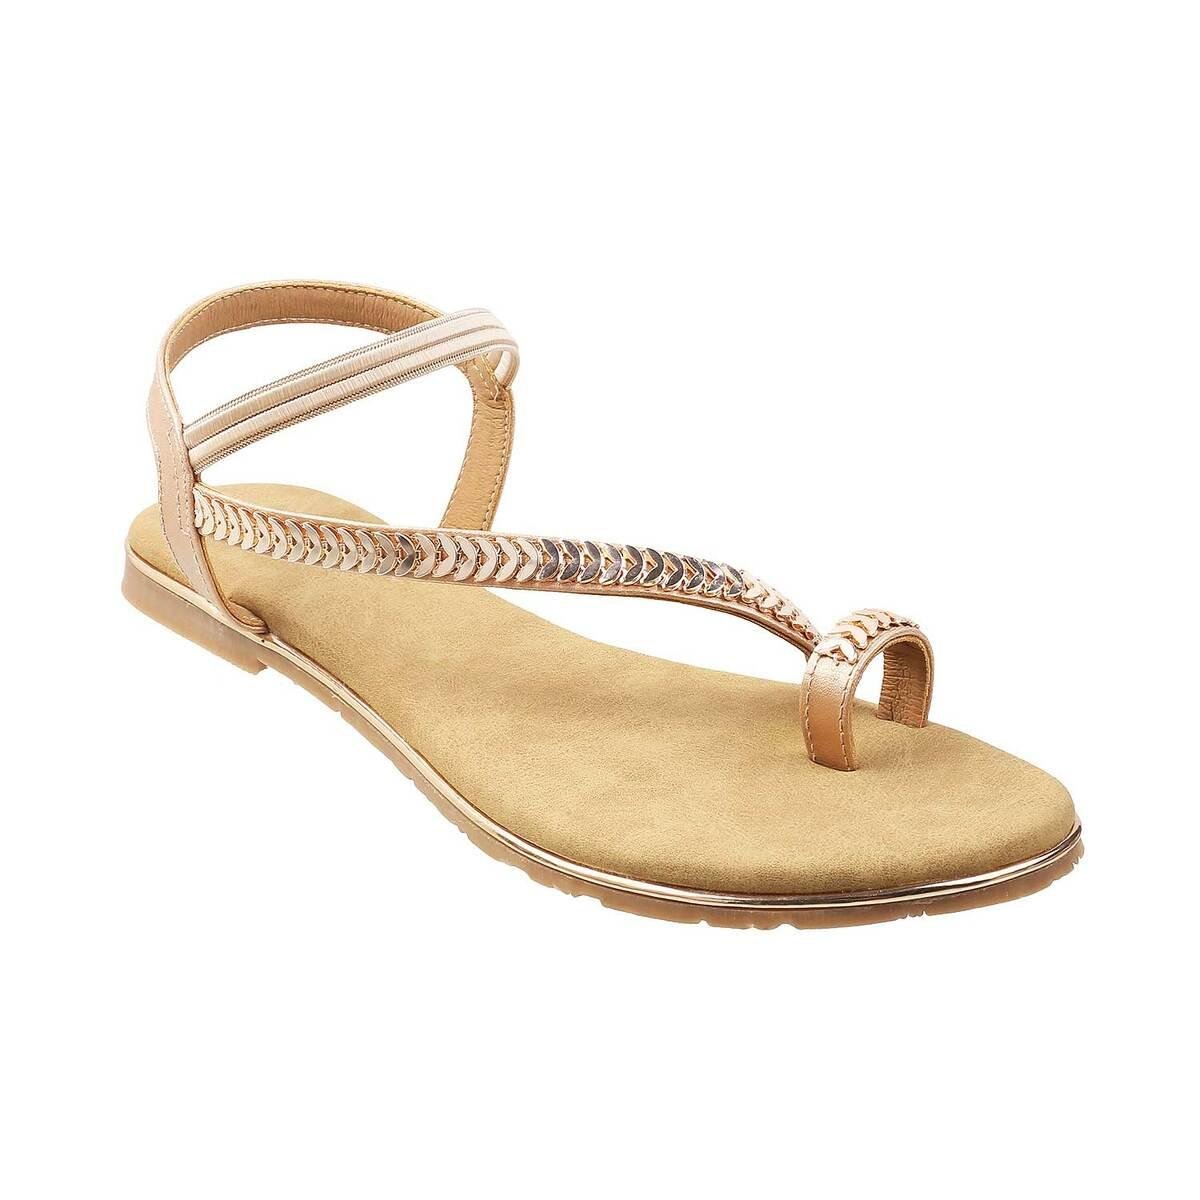 Buy Metro Women Gold Casual Sandals Online | SKU: 33-3054-52-36 - Metro ...